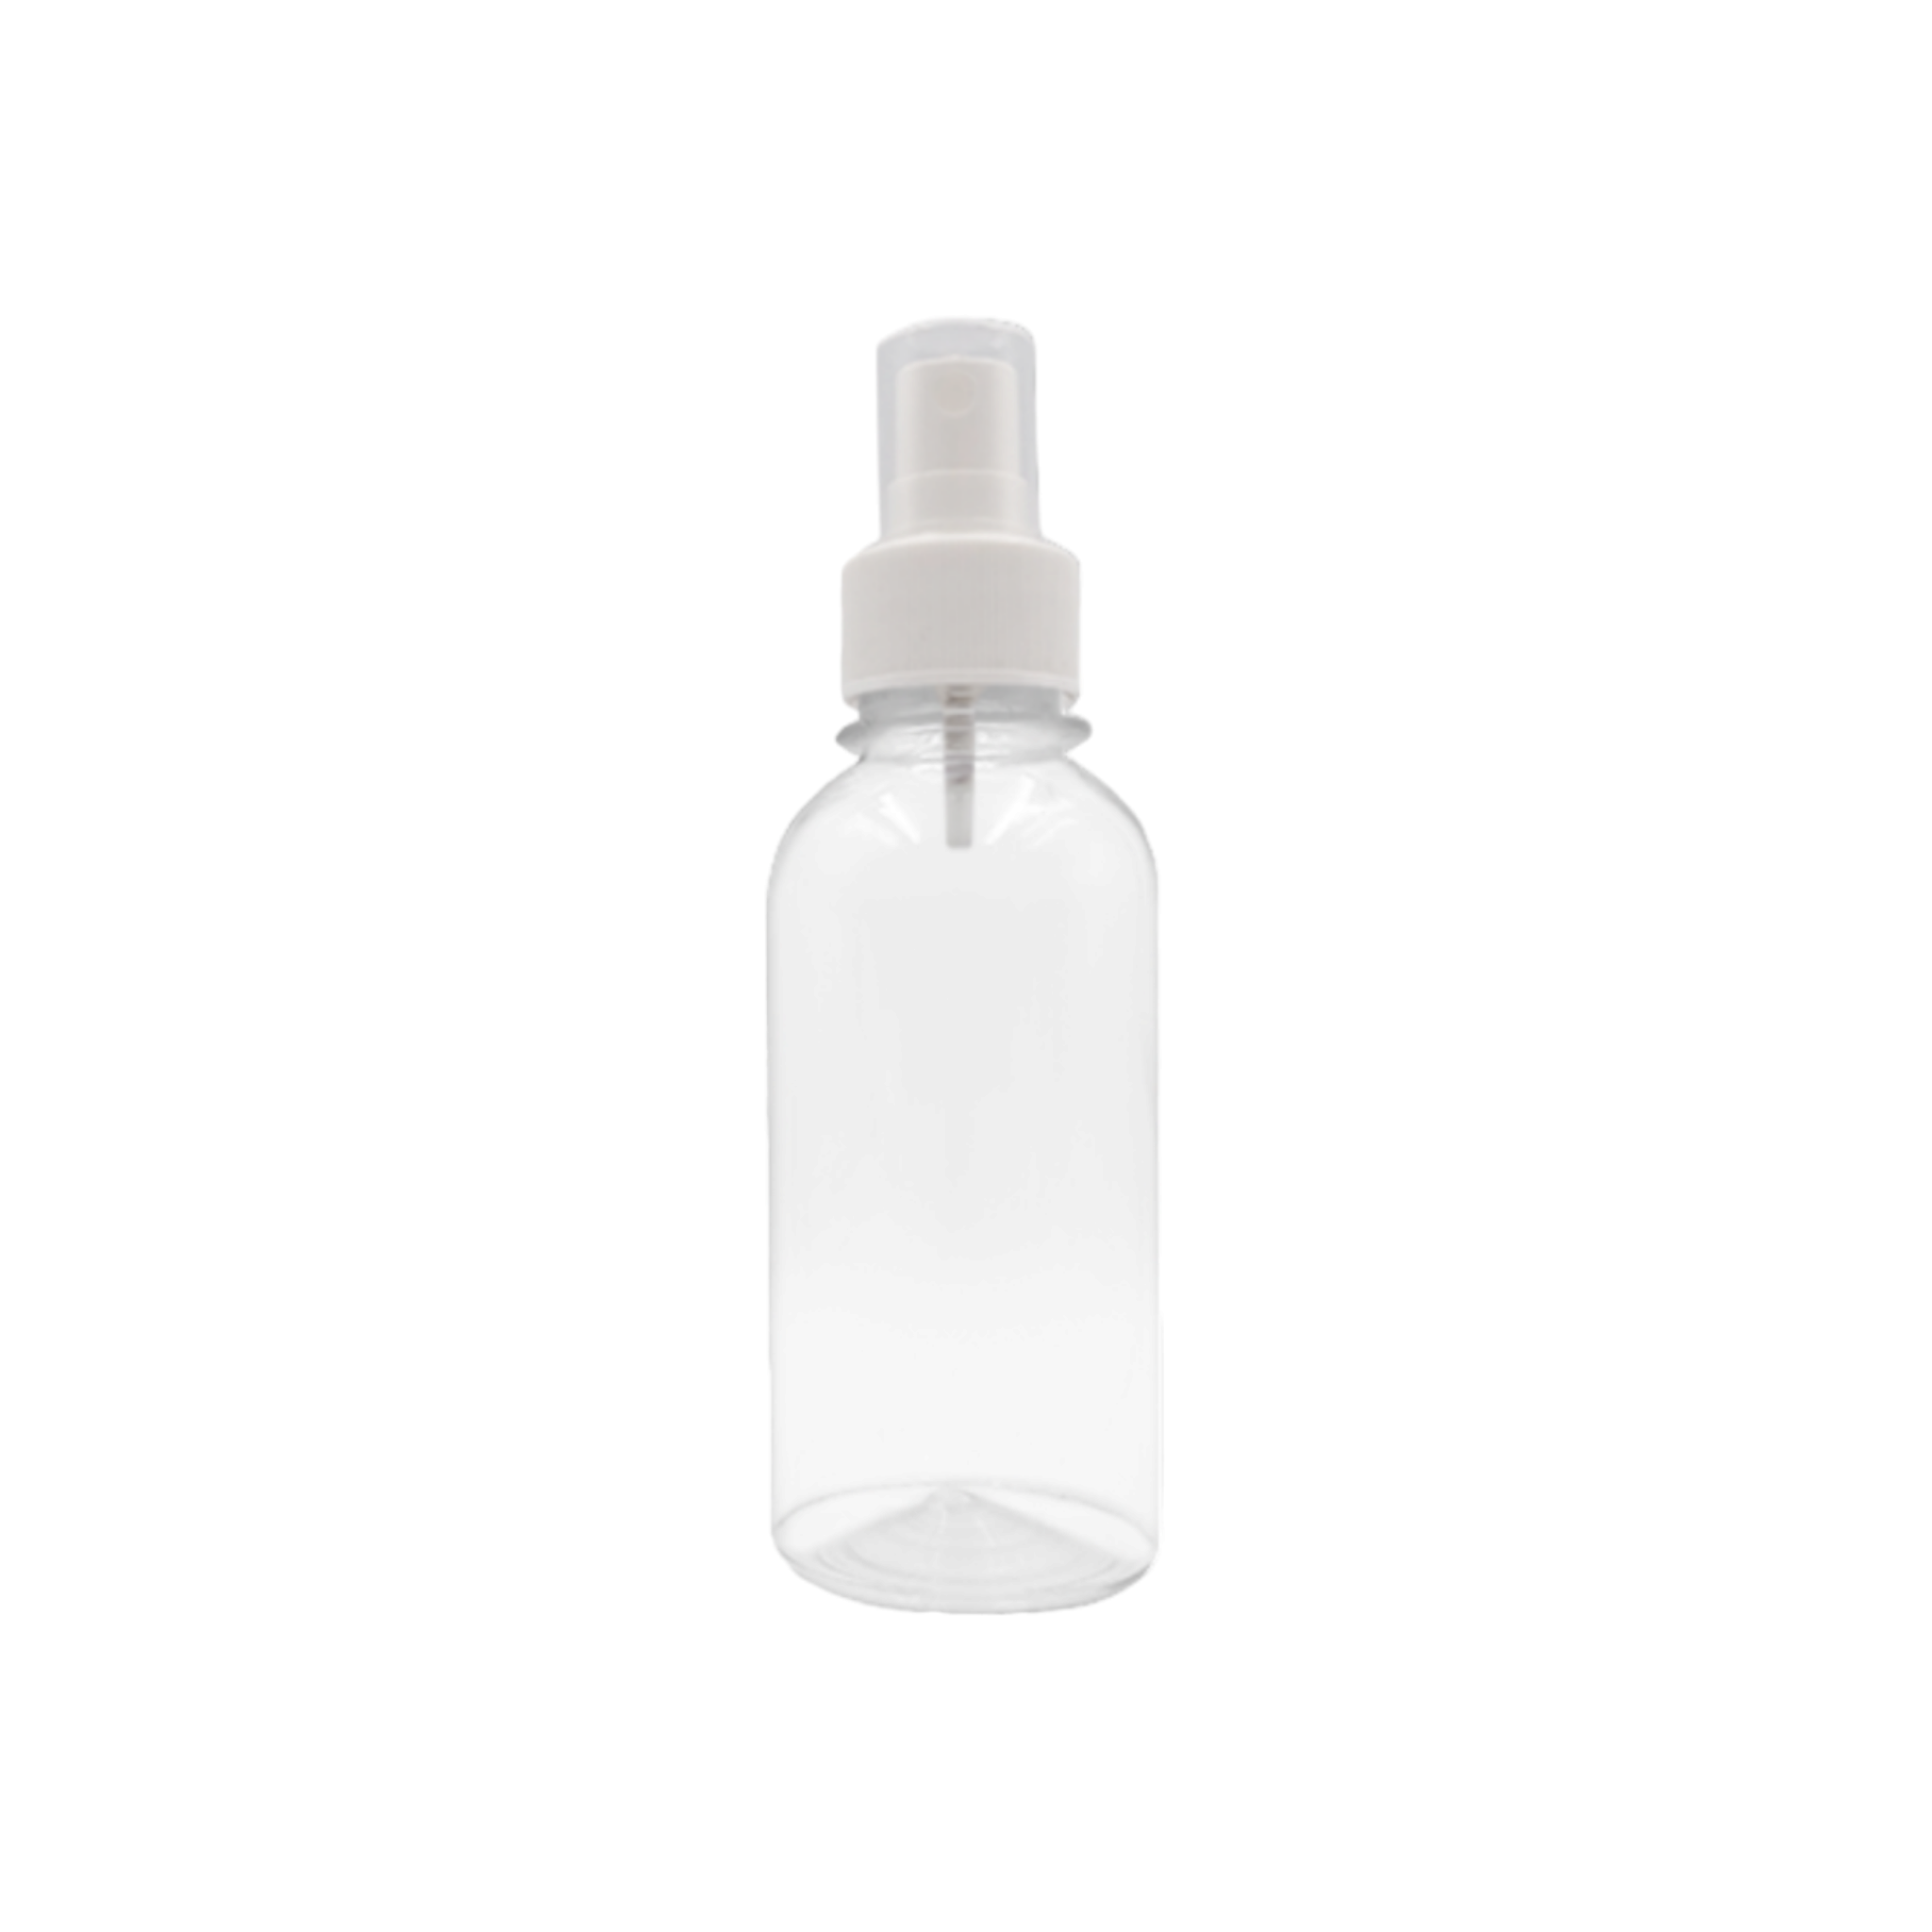 200ml Mist Spray Travel Bottle PET Plastic